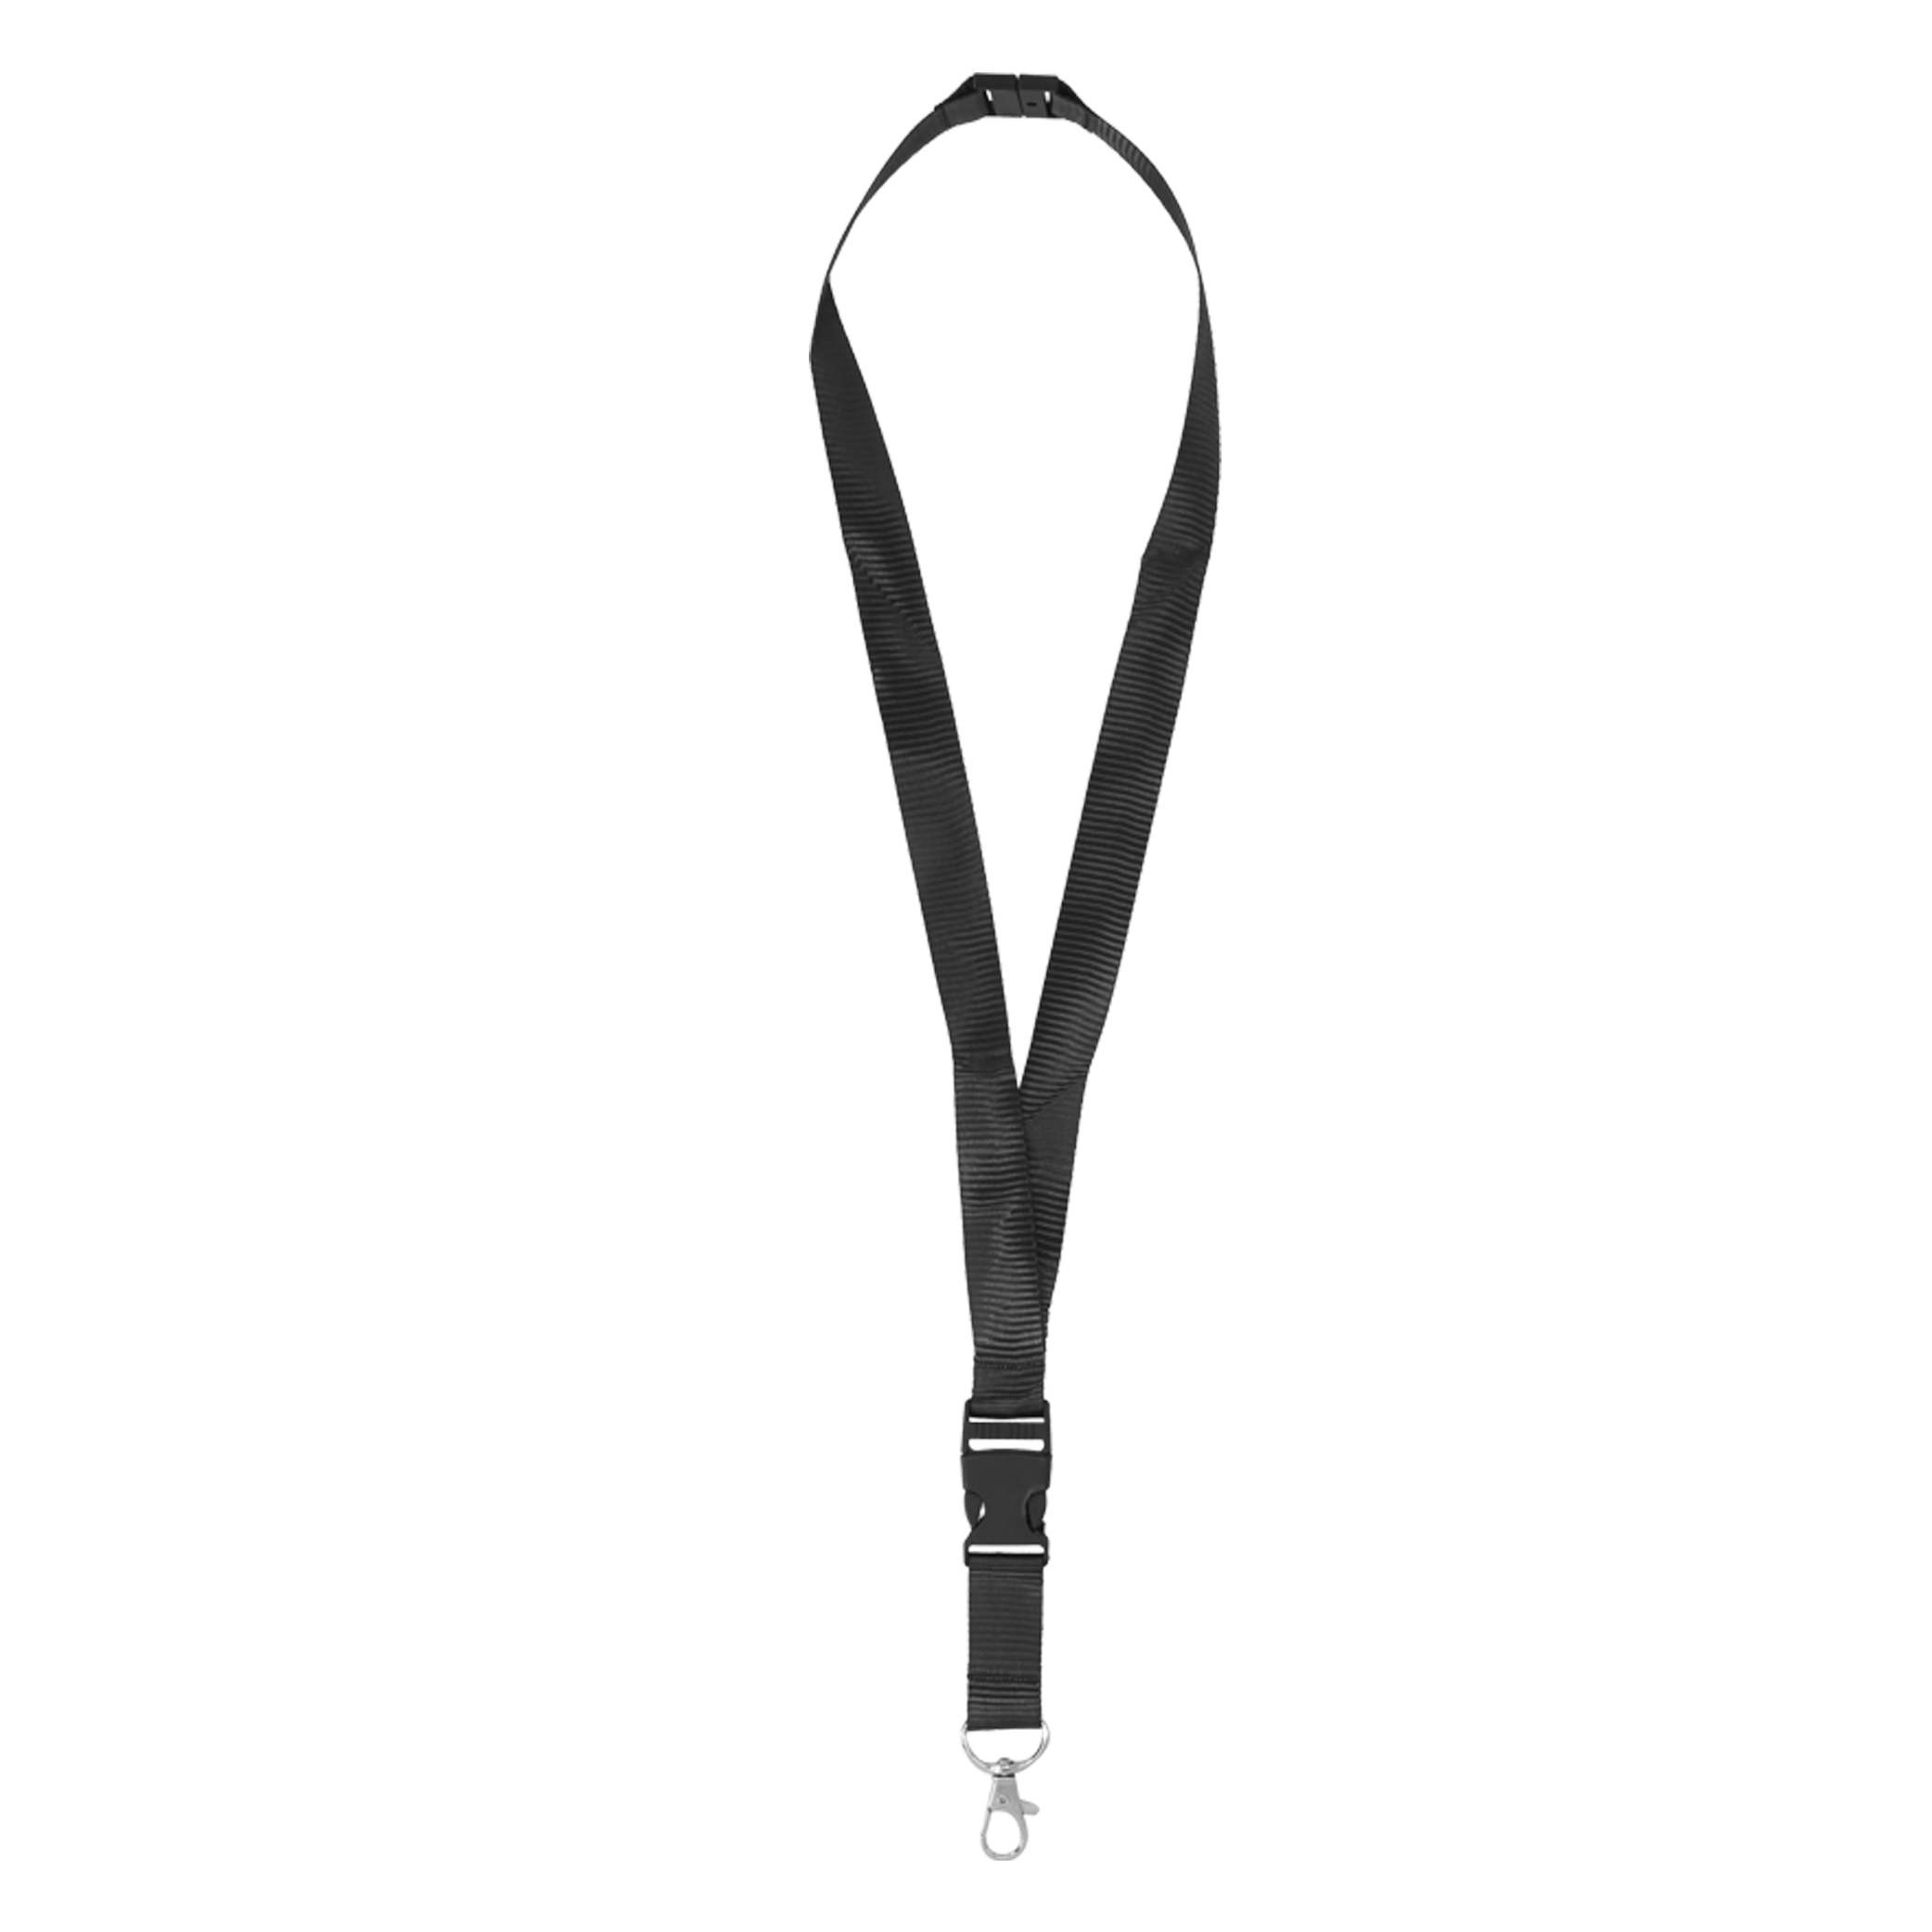 O-064, Cinta porta gafete con broche de seguridad, clip desmontable de plástico y gancho metálico